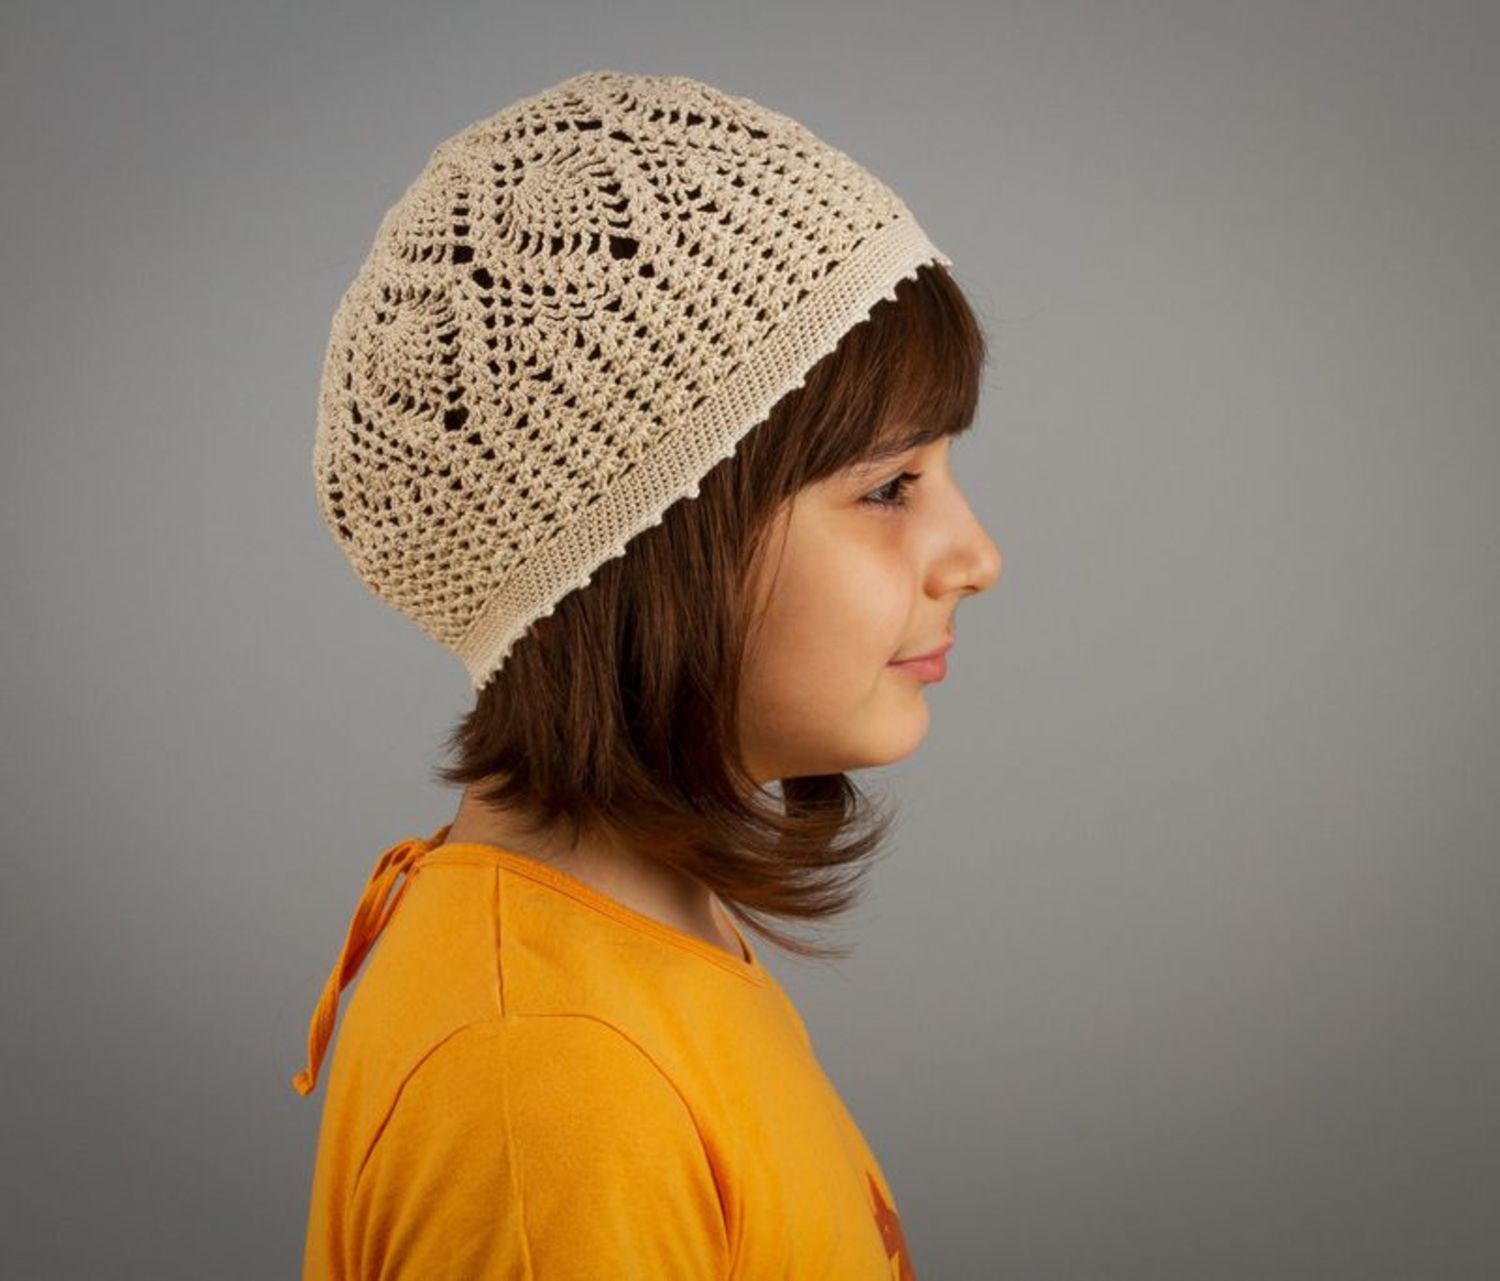 Children's crocheted hat photo 3